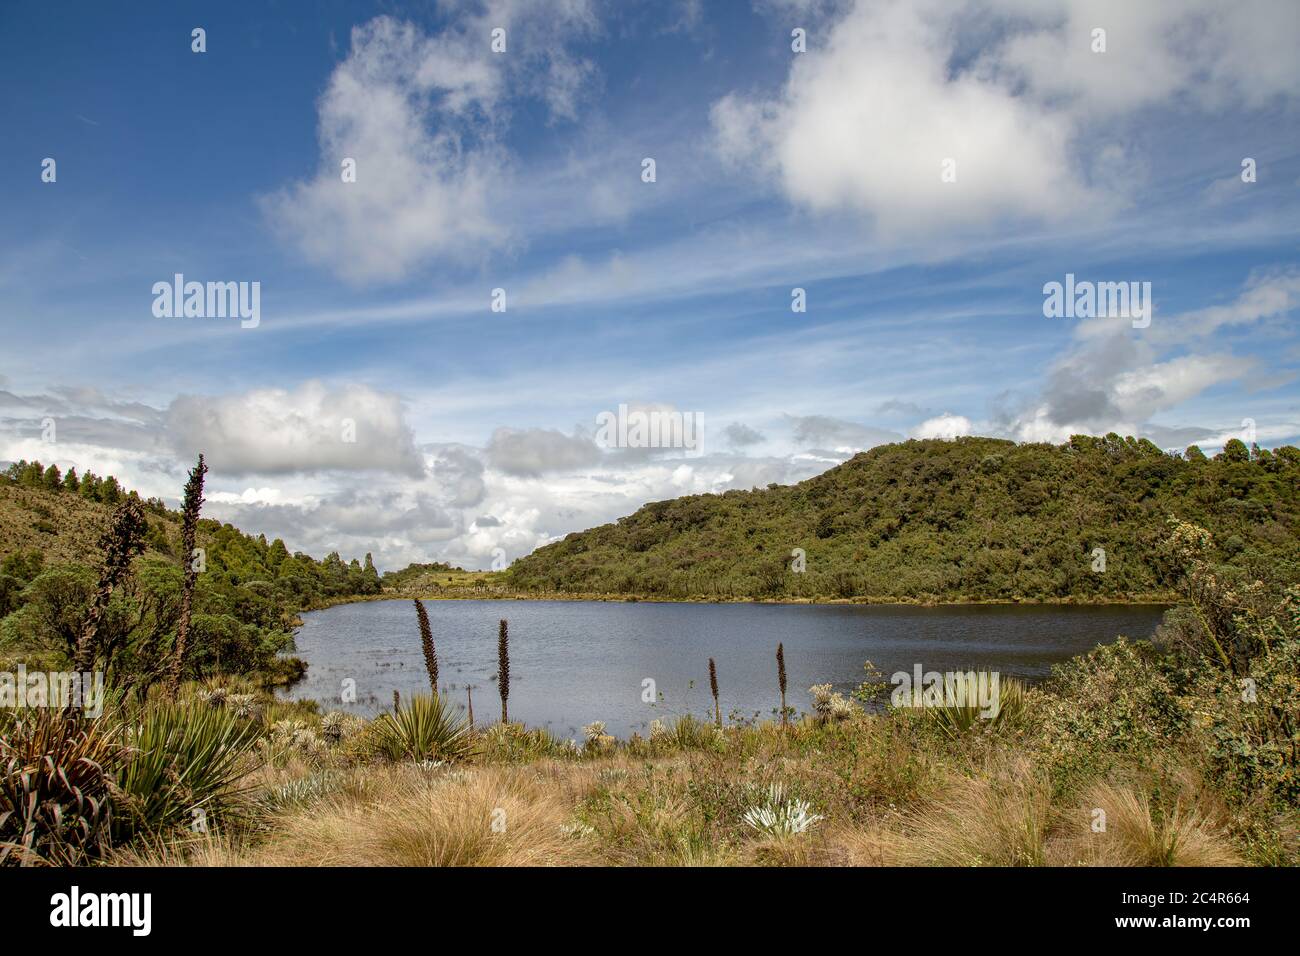 Vista panorámica de la Laguna Verde, un lago natural en el páramo de Teatinos, en las tierras altas de las montañas andinas del centro de Colombia. Foto de stock